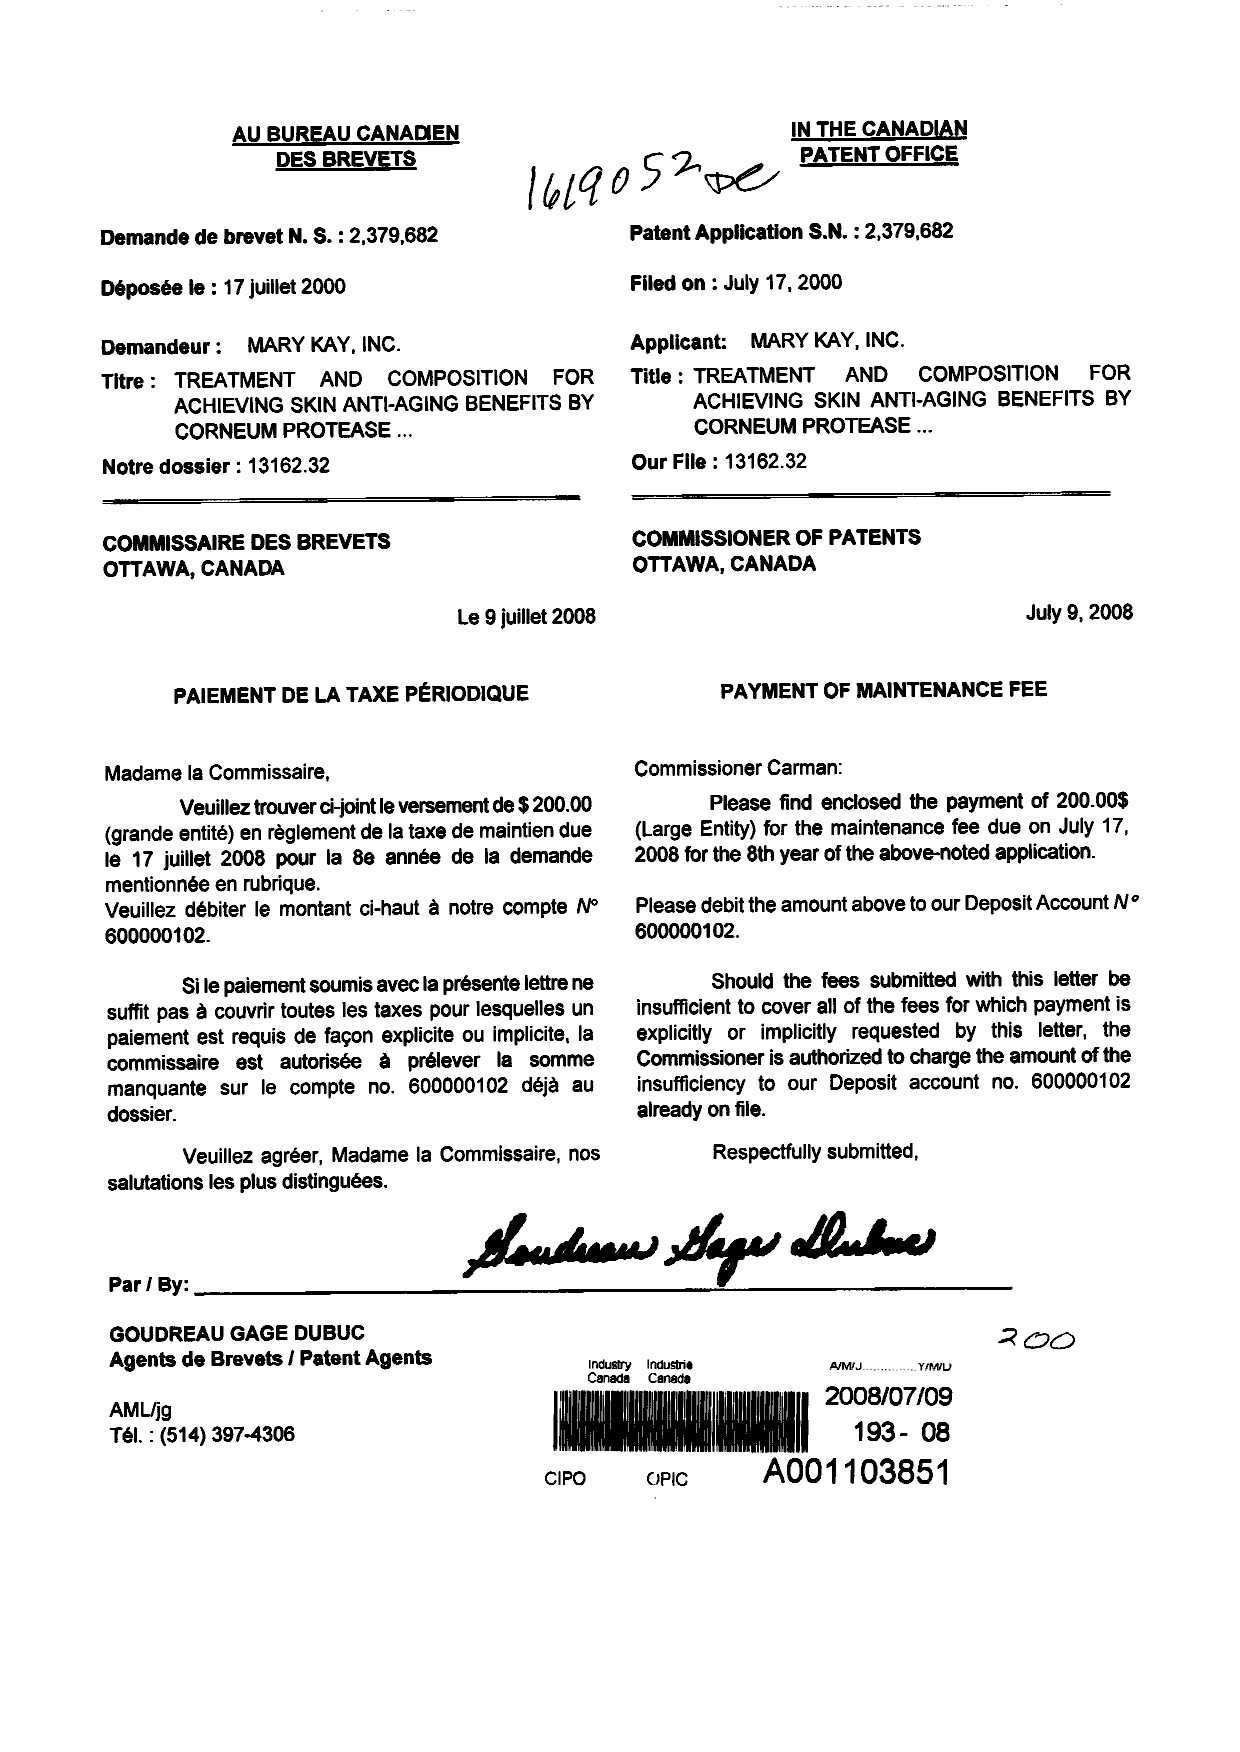 Document de brevet canadien 2379682. Taxes 20080709. Image 1 de 1